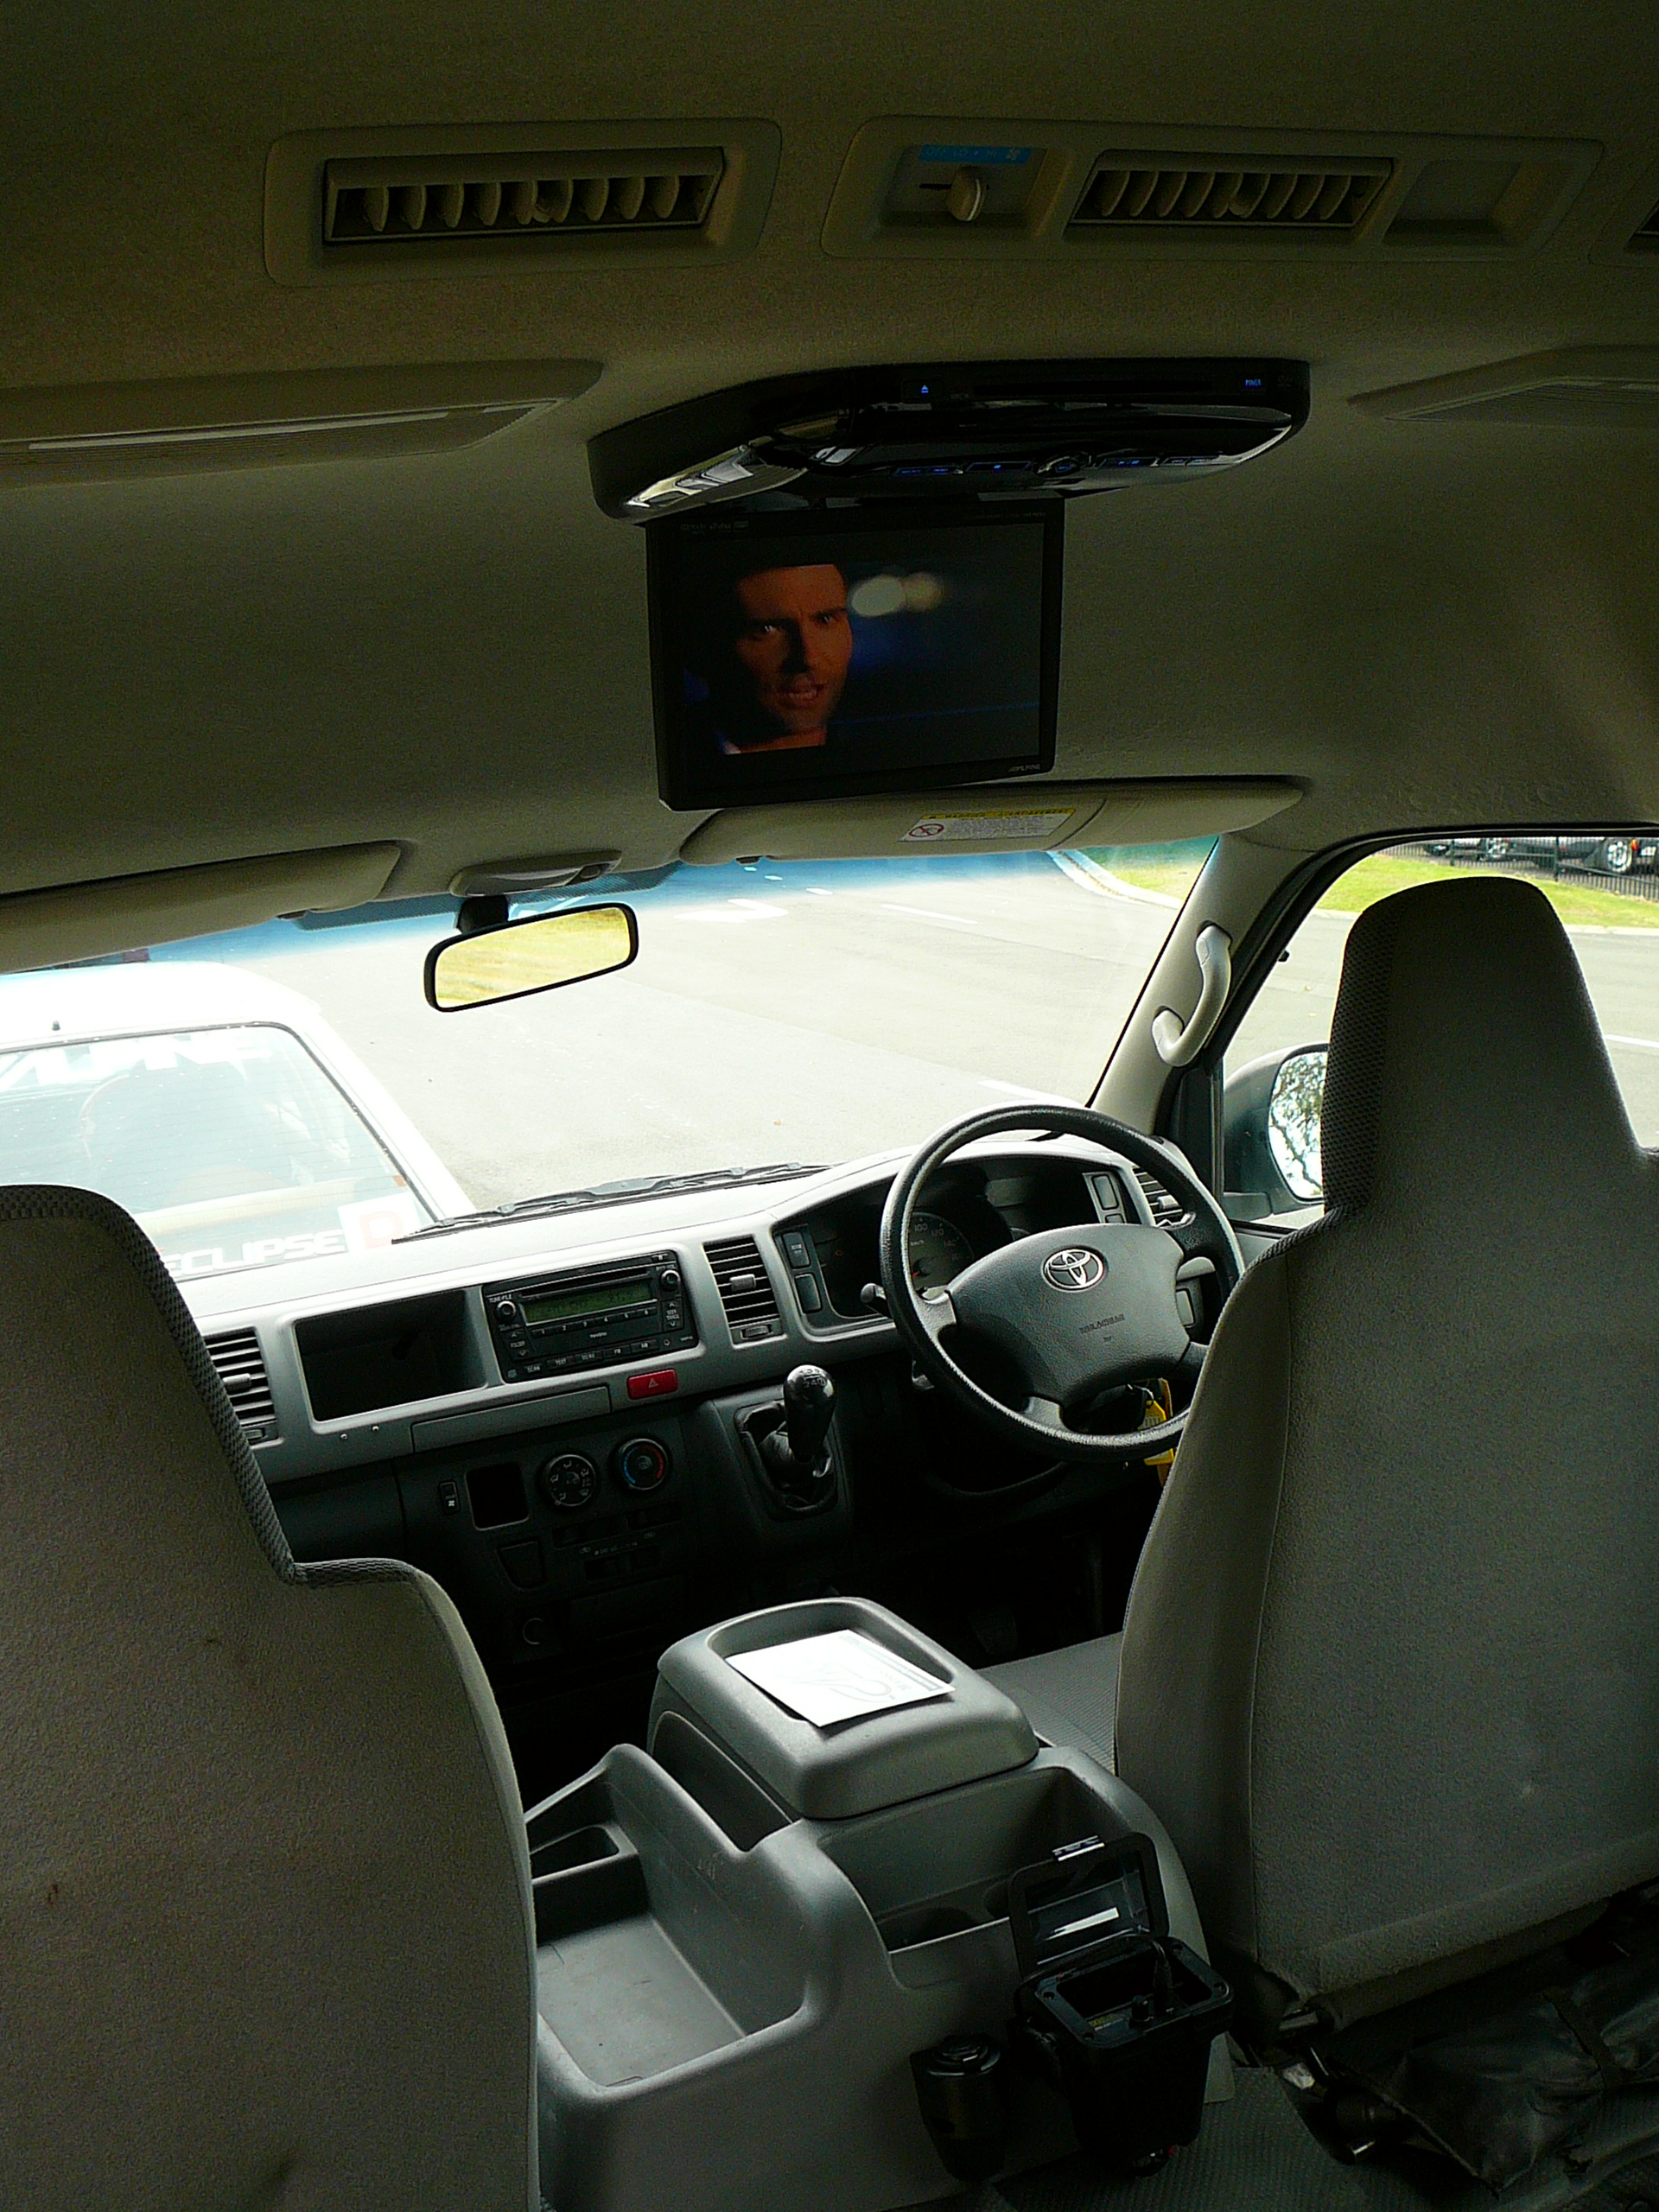 Toyota Hiace, Alpine DVD Roof Screen & Rear Speakers